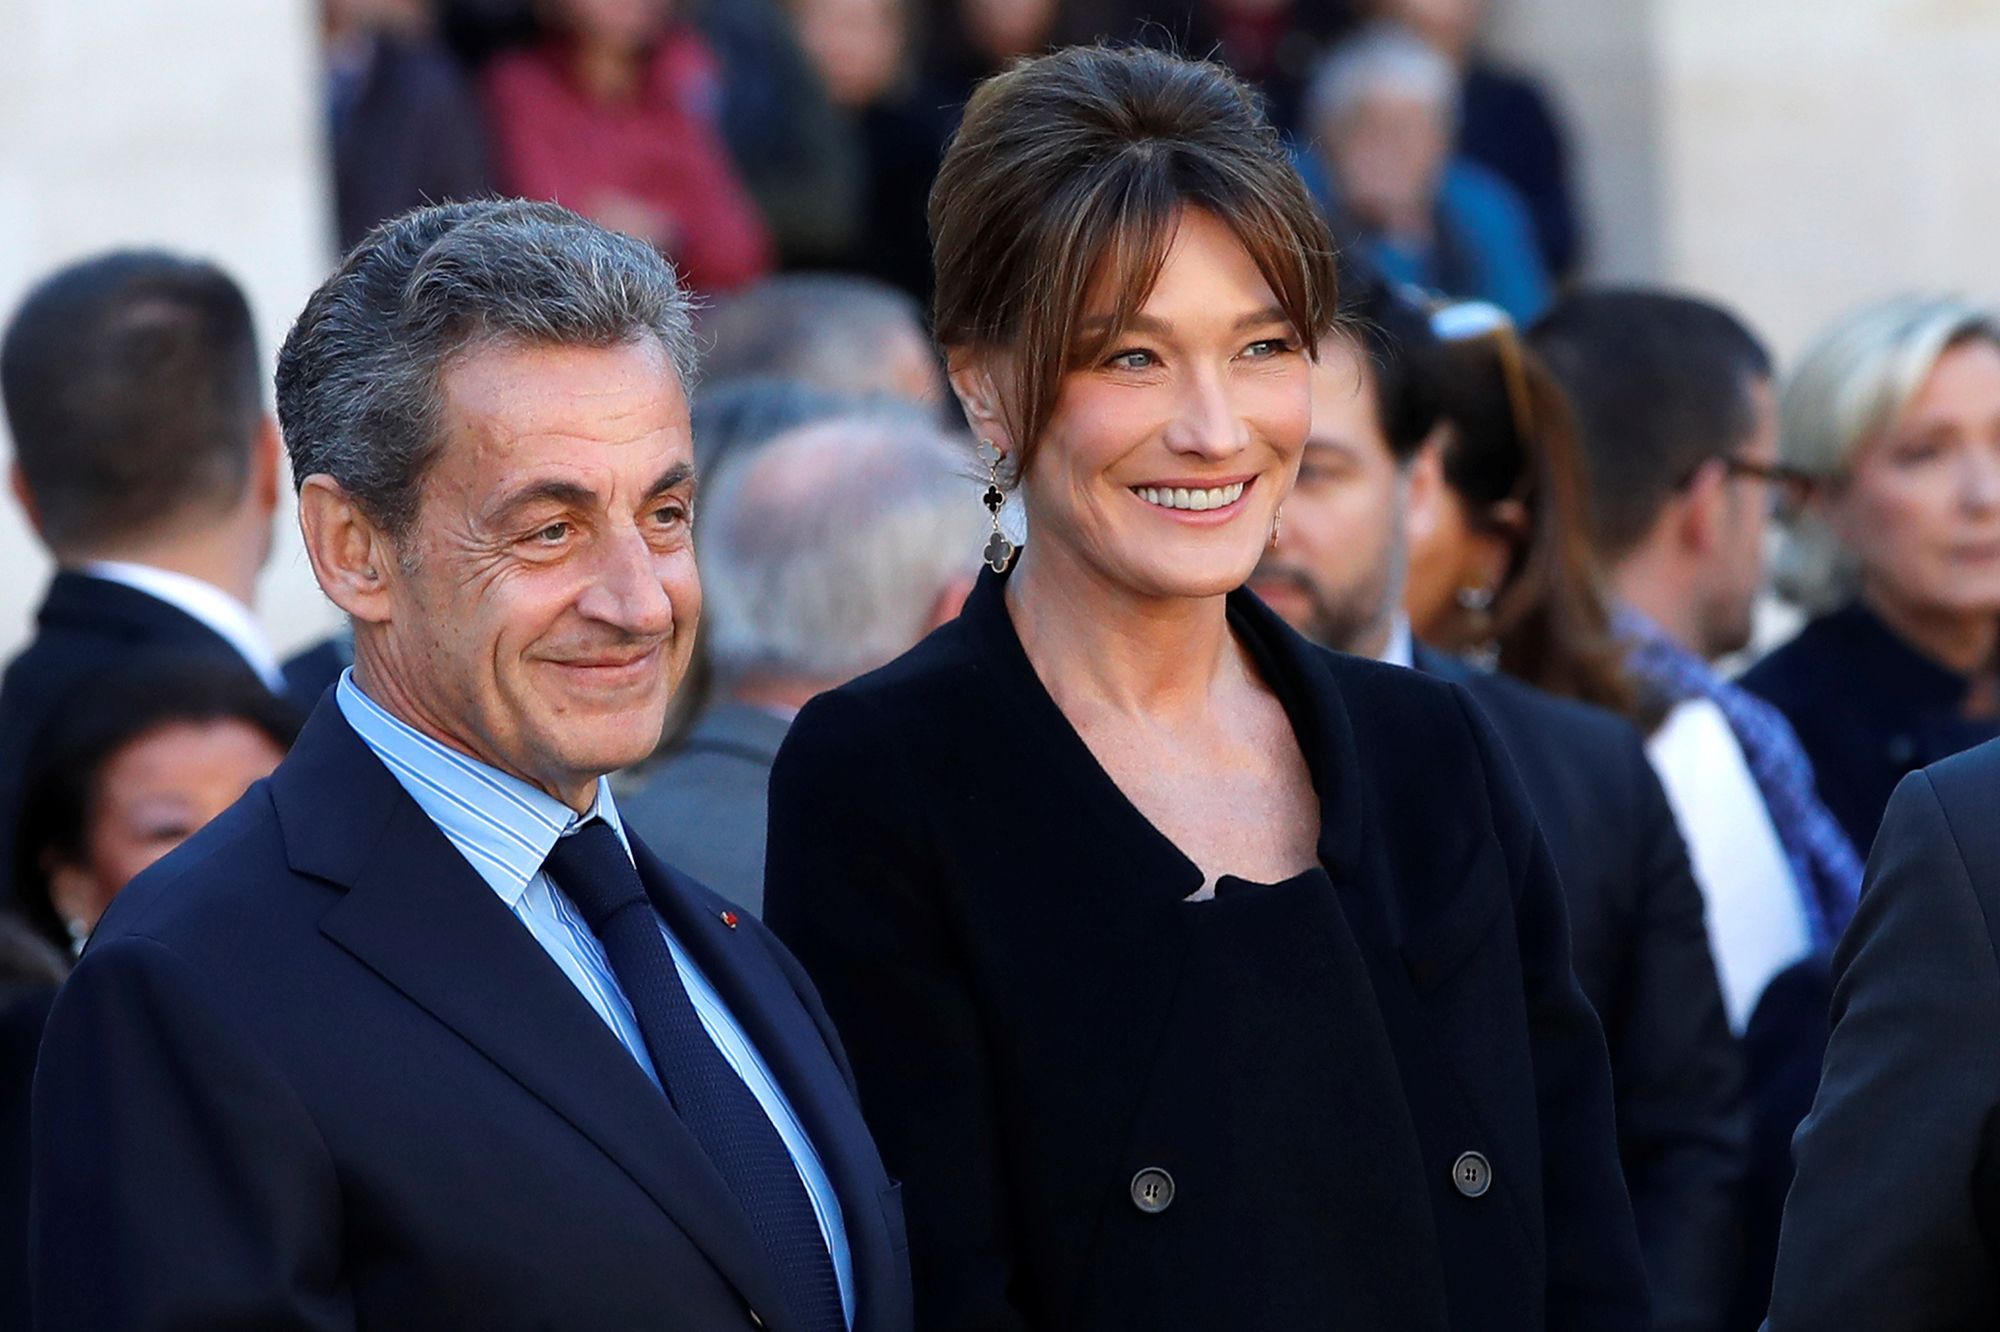 Olivier Sarkozy et Mary-Kate Olsen séparés : La réaction de Nicolas Sarkozy et Carla Bruni